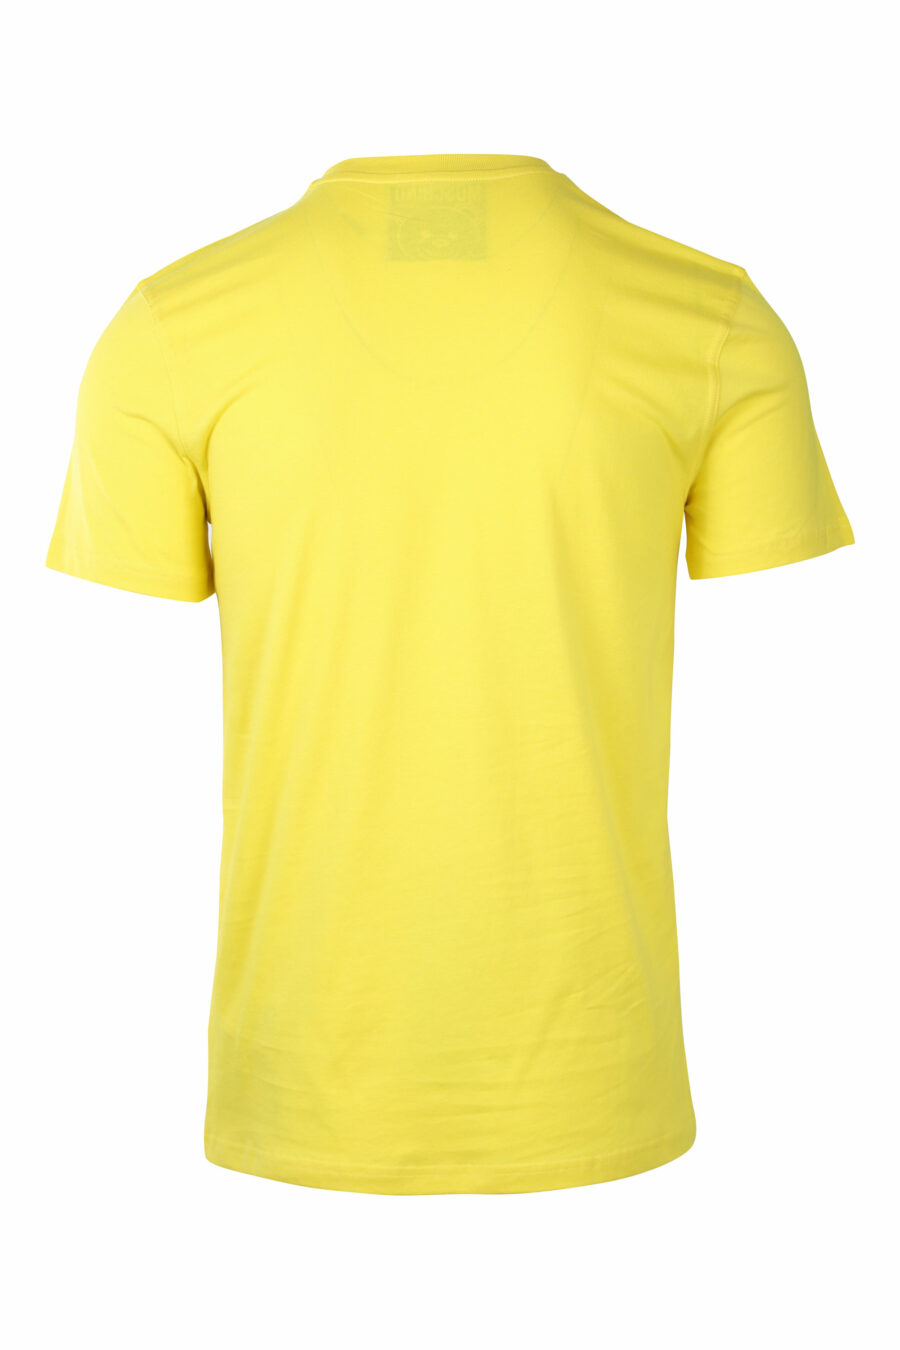 Camiseta amarilla con maxilogo oso monocromático - IMG 1420